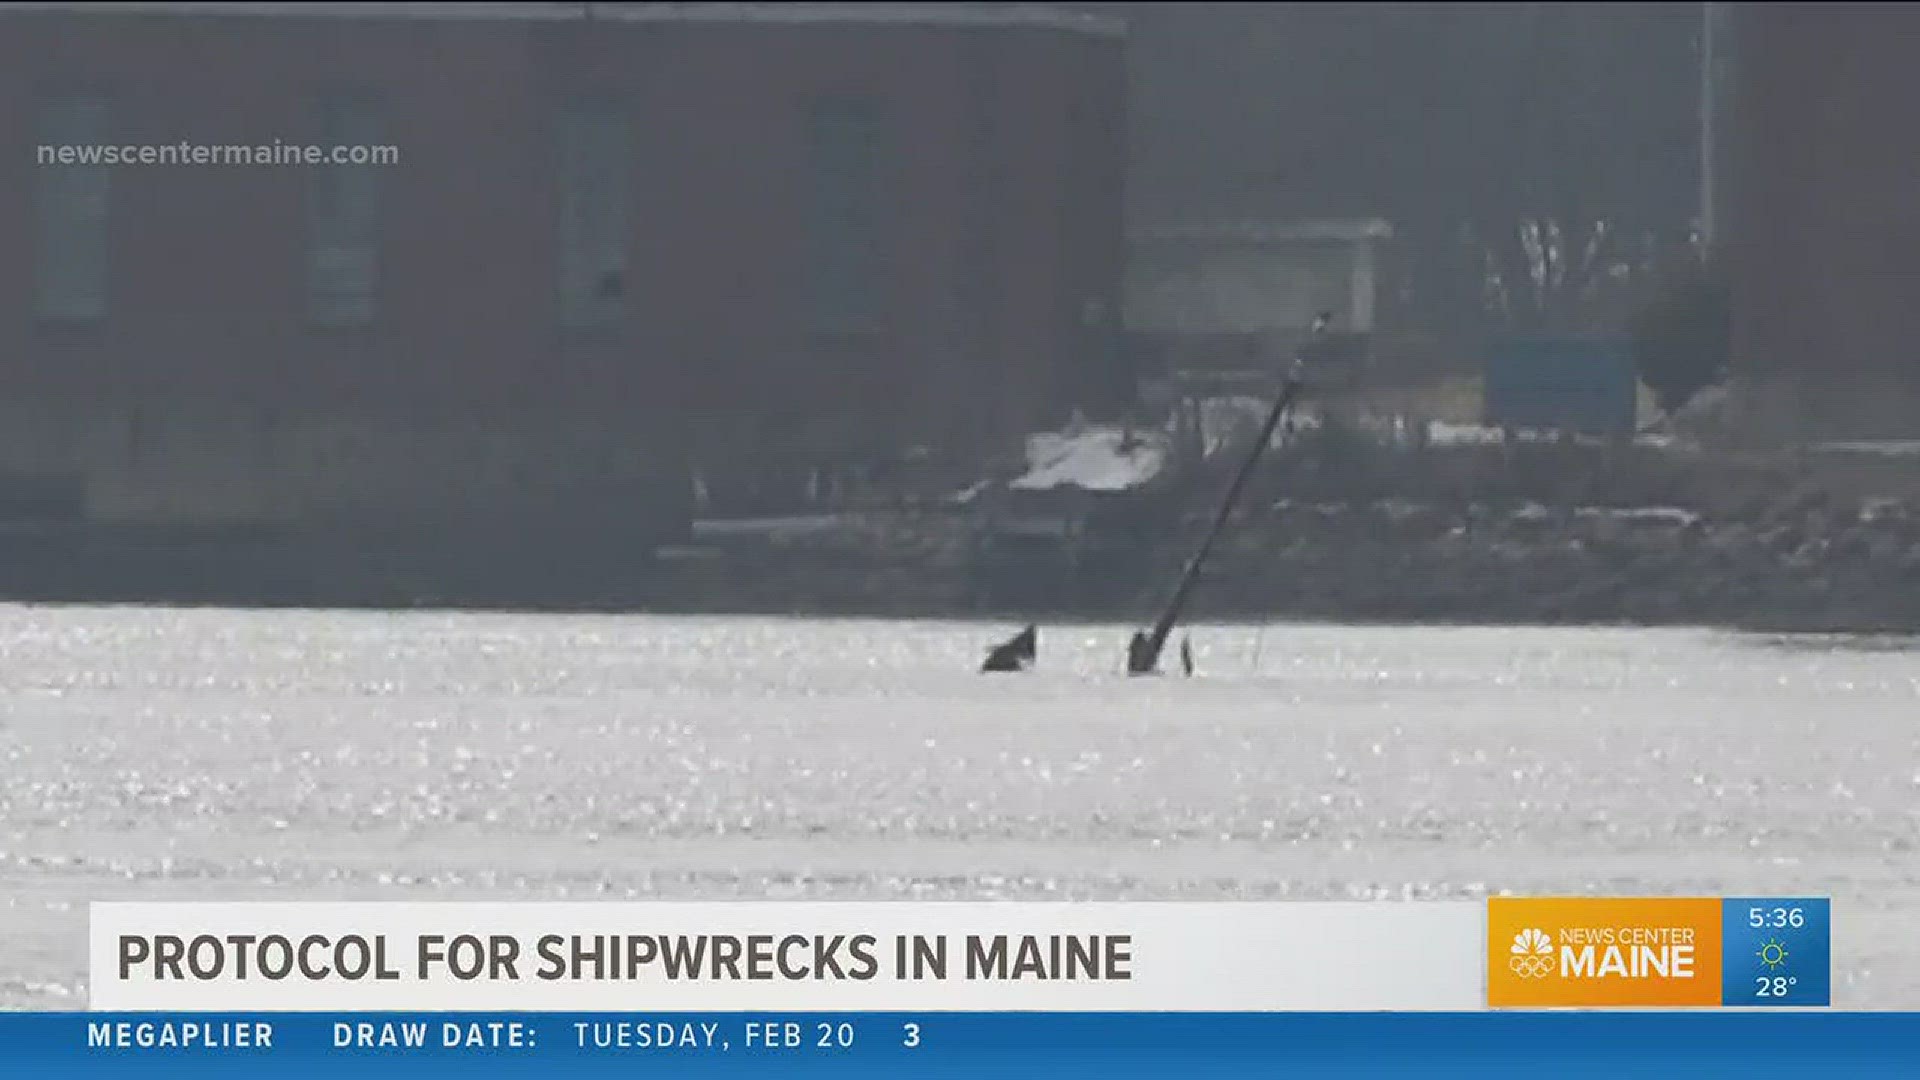 Protocol for Maine shipwrecks